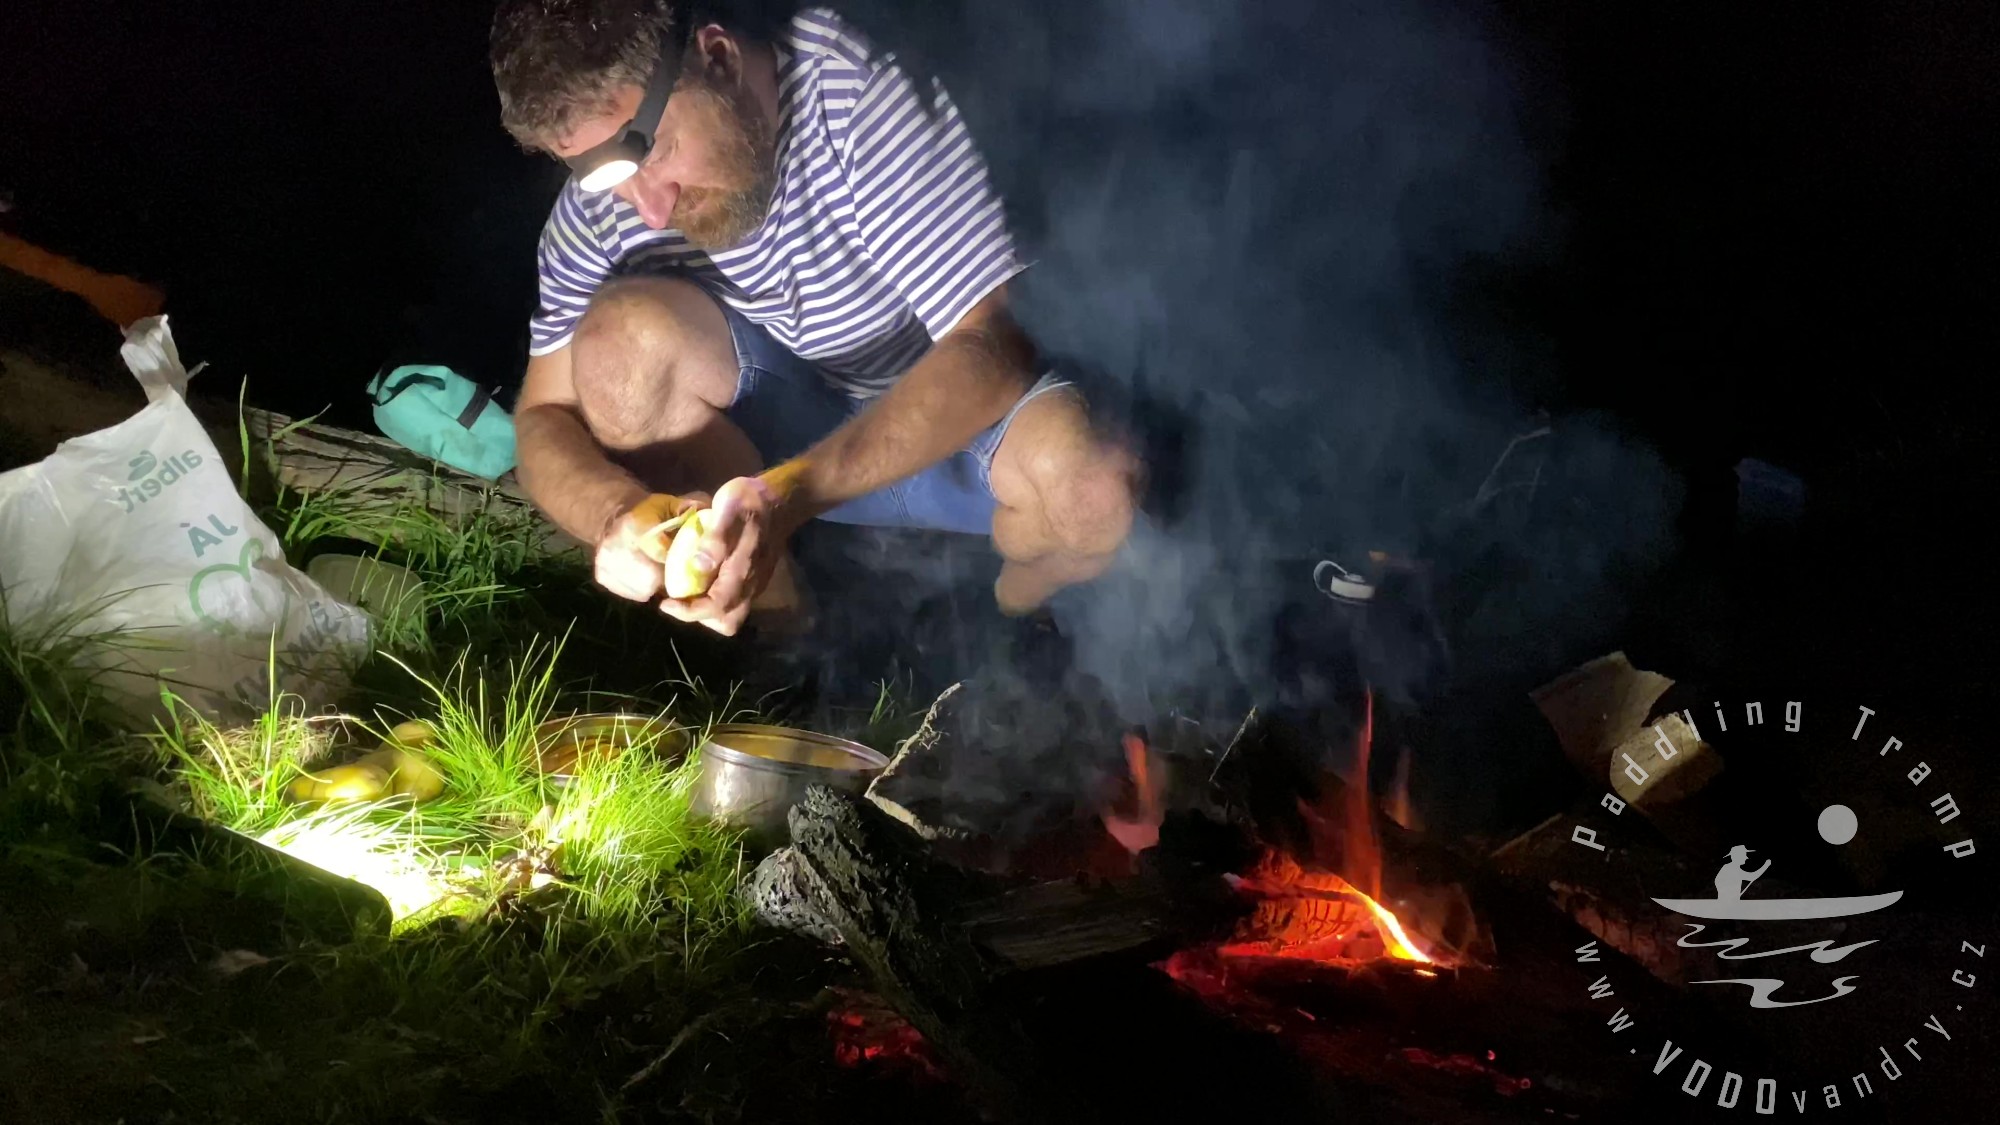 Splutí Opavice s přespáním a s bramboráky na ohni, plavba na kánoi Gumotex Pálava, bushcraft vodáci